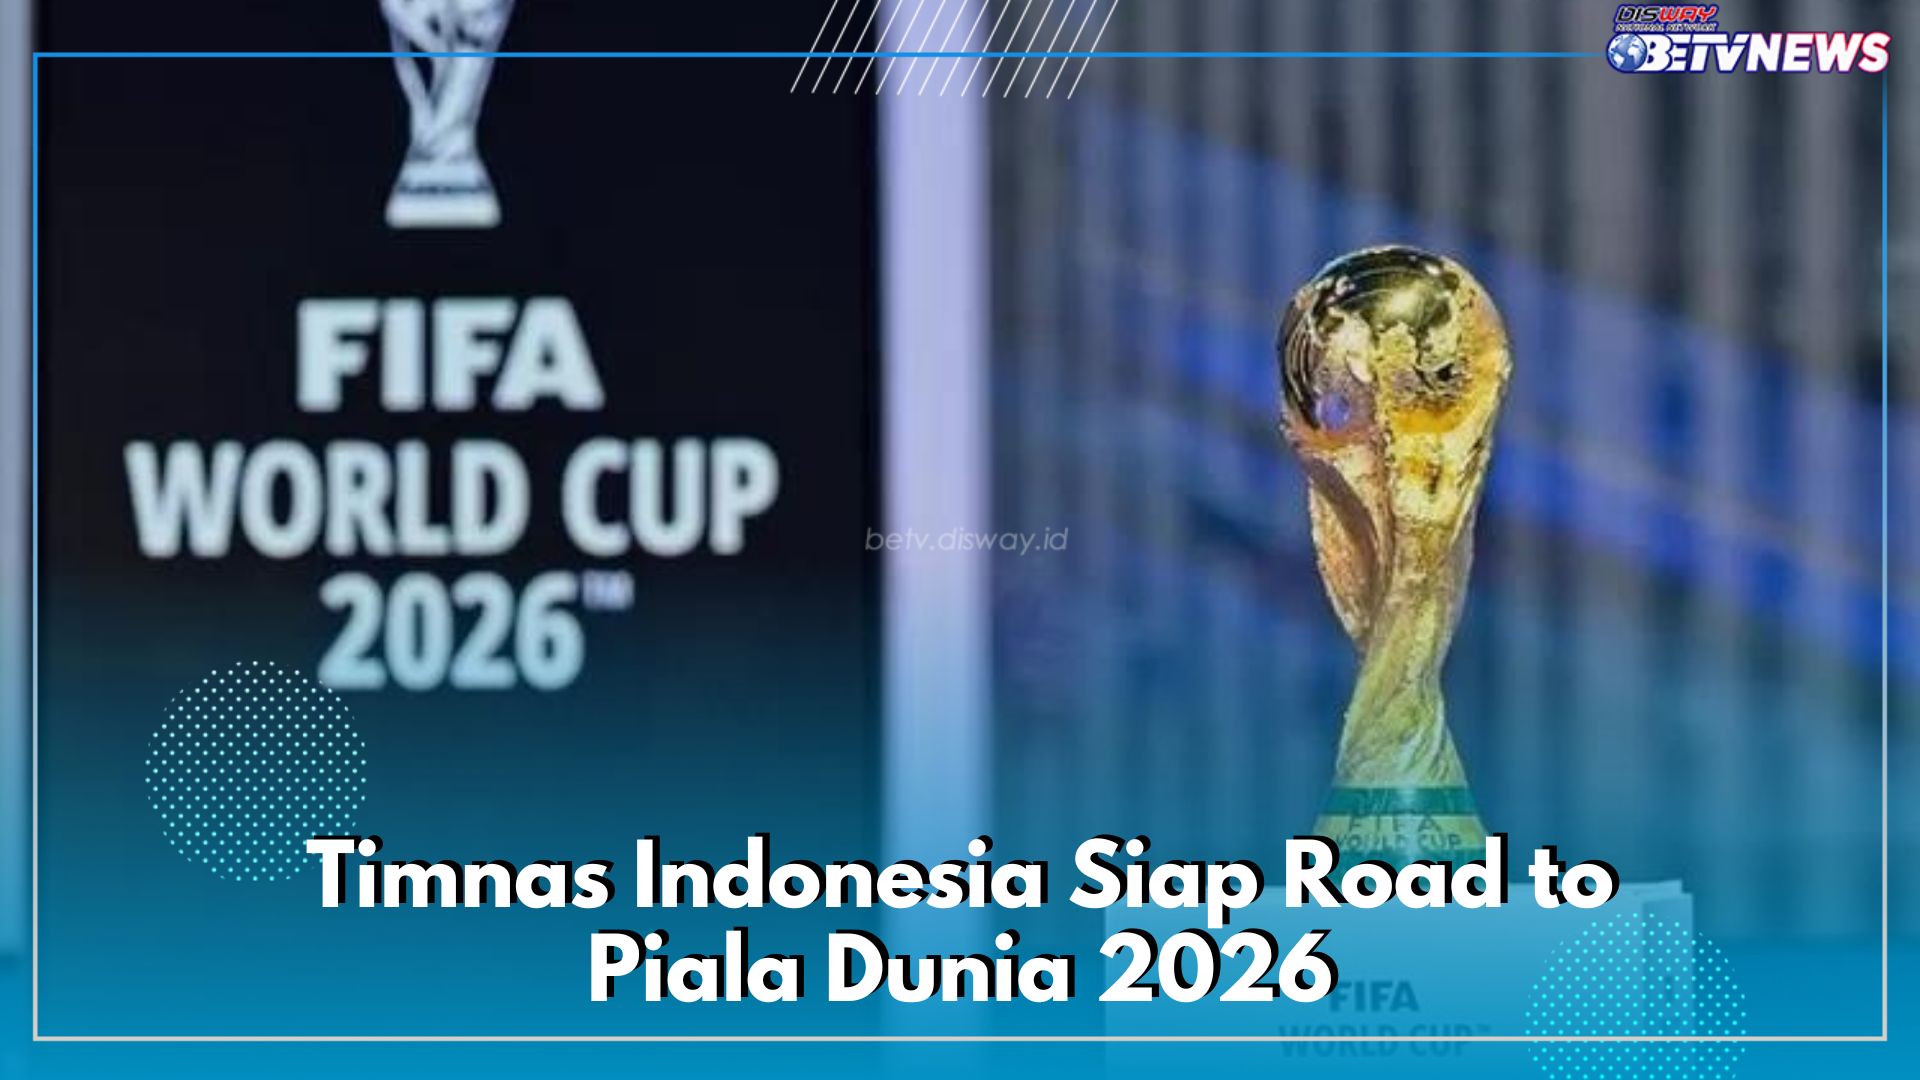 Gagal ke Olimpiade 2024, Timnas Indonesia Siap Road to Piala Dunia 2026, Berikut Jadwal Laga Kualifikasinya